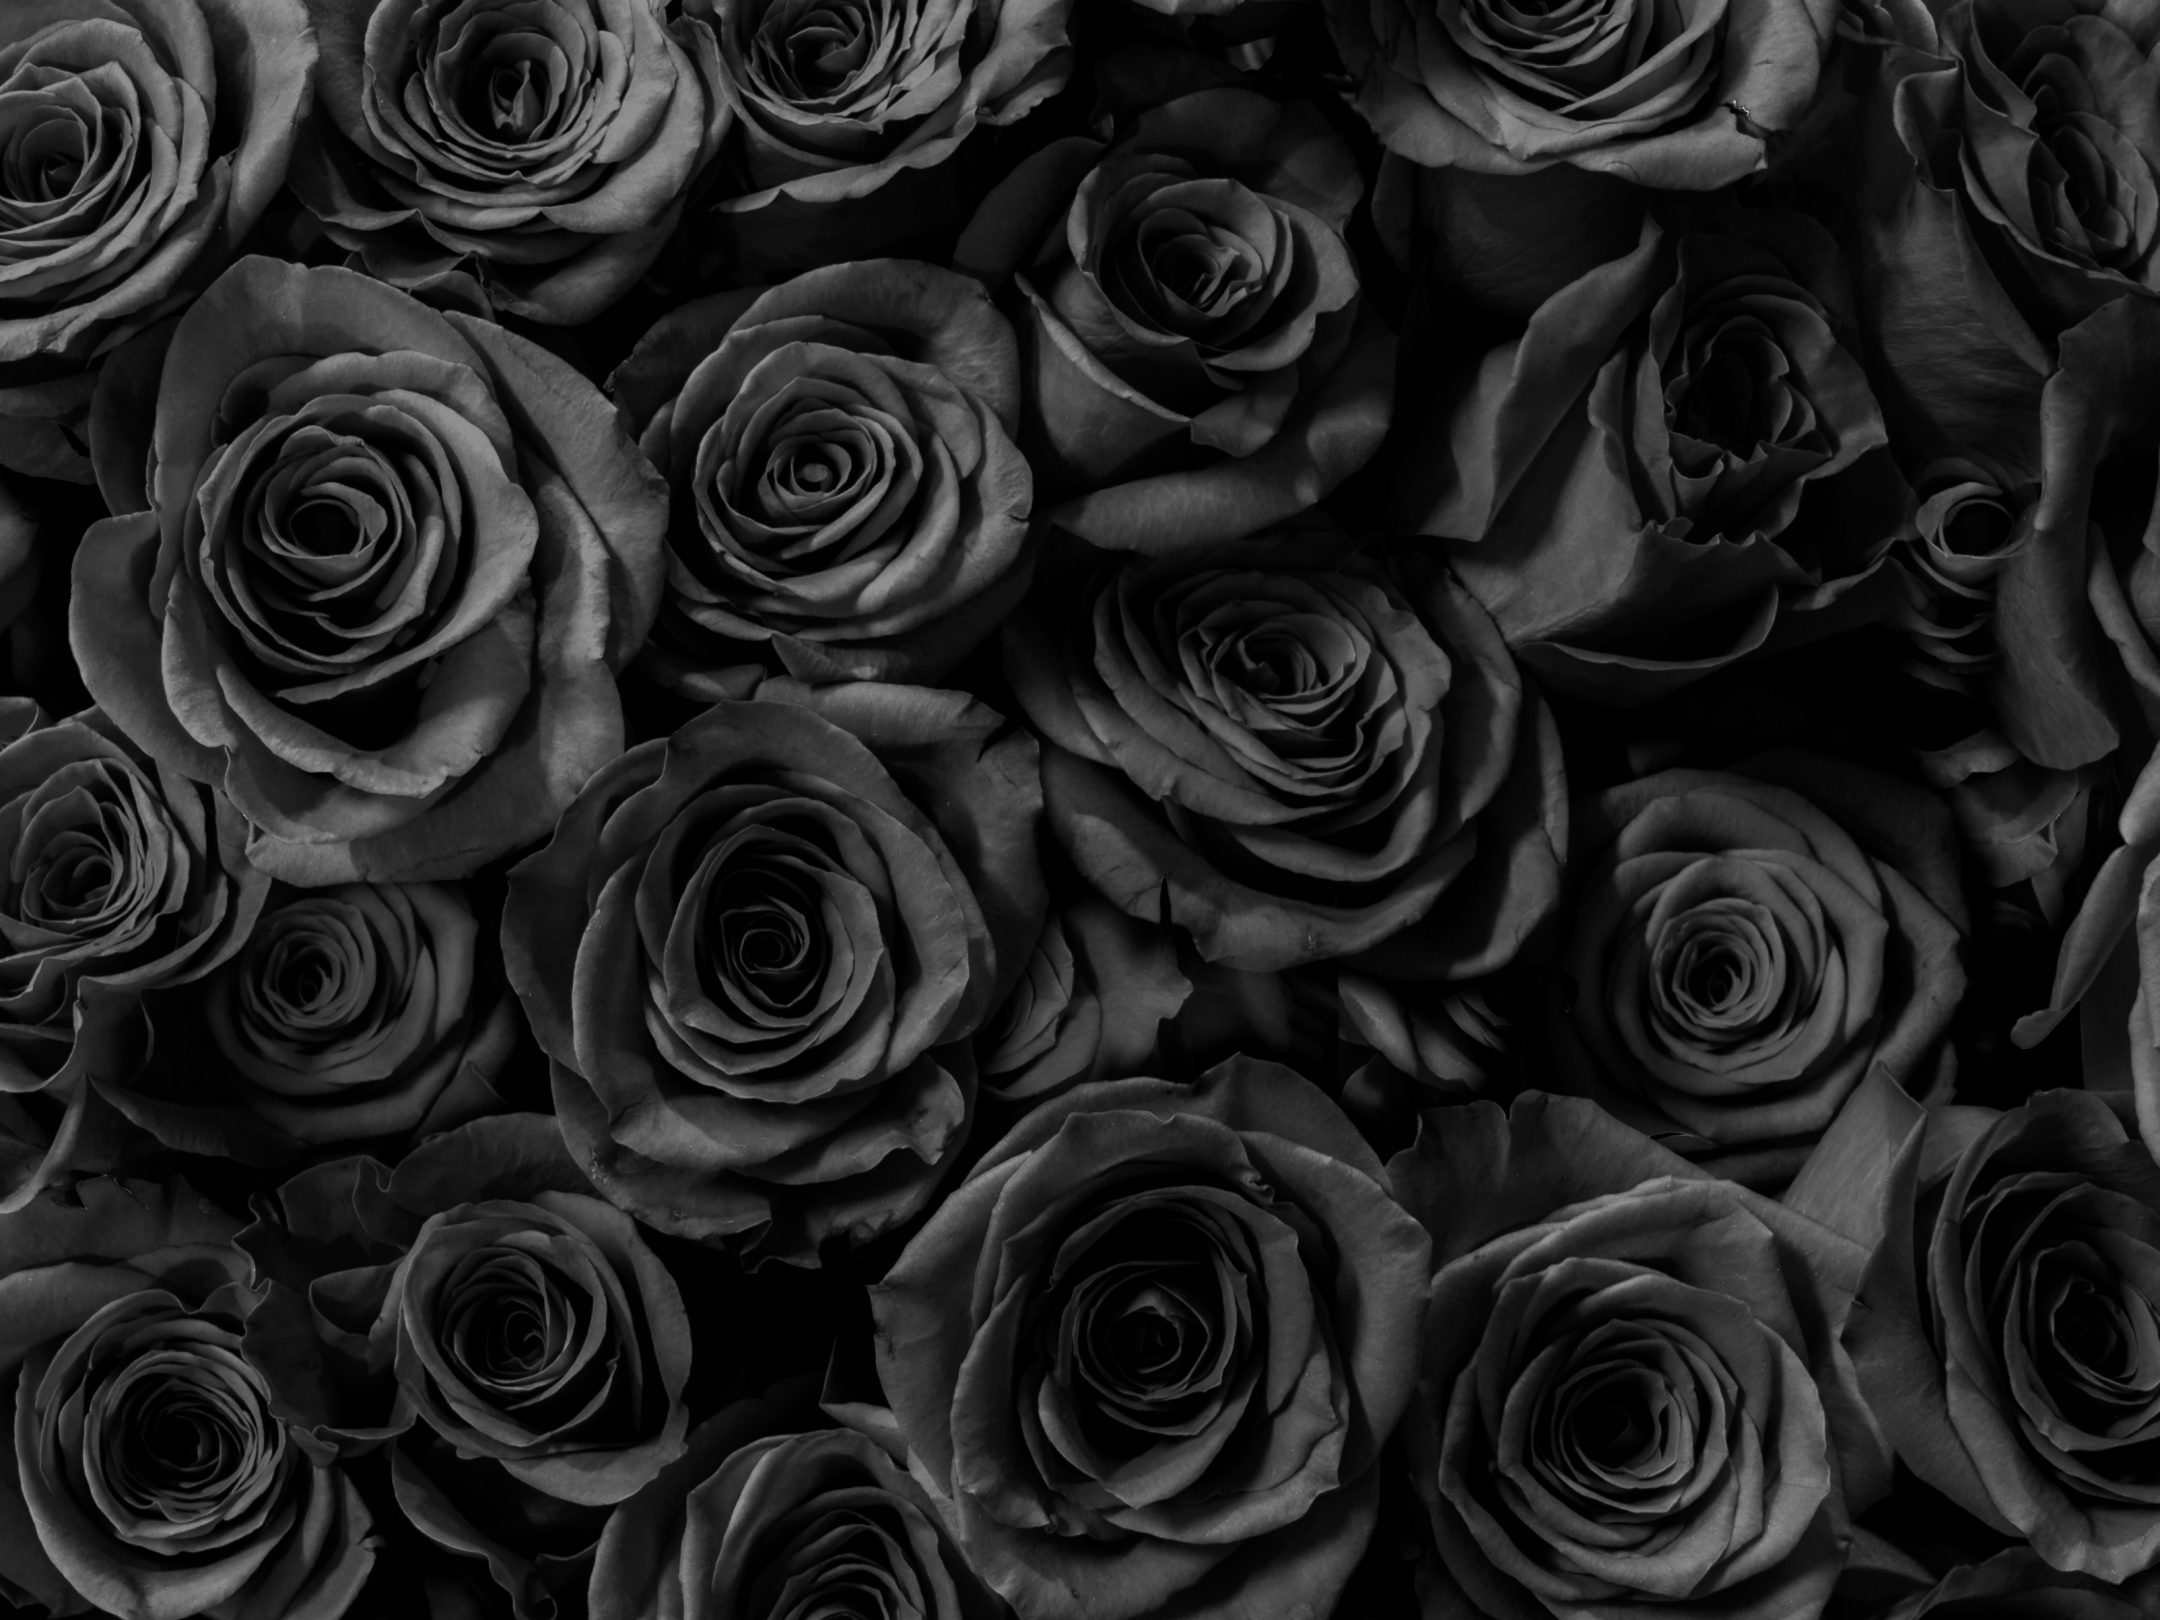 2160x1620 iPad wallpaper 4k Black Roses Gift Anniversary iPad Wallpaper 2160x1620 pixels resolution